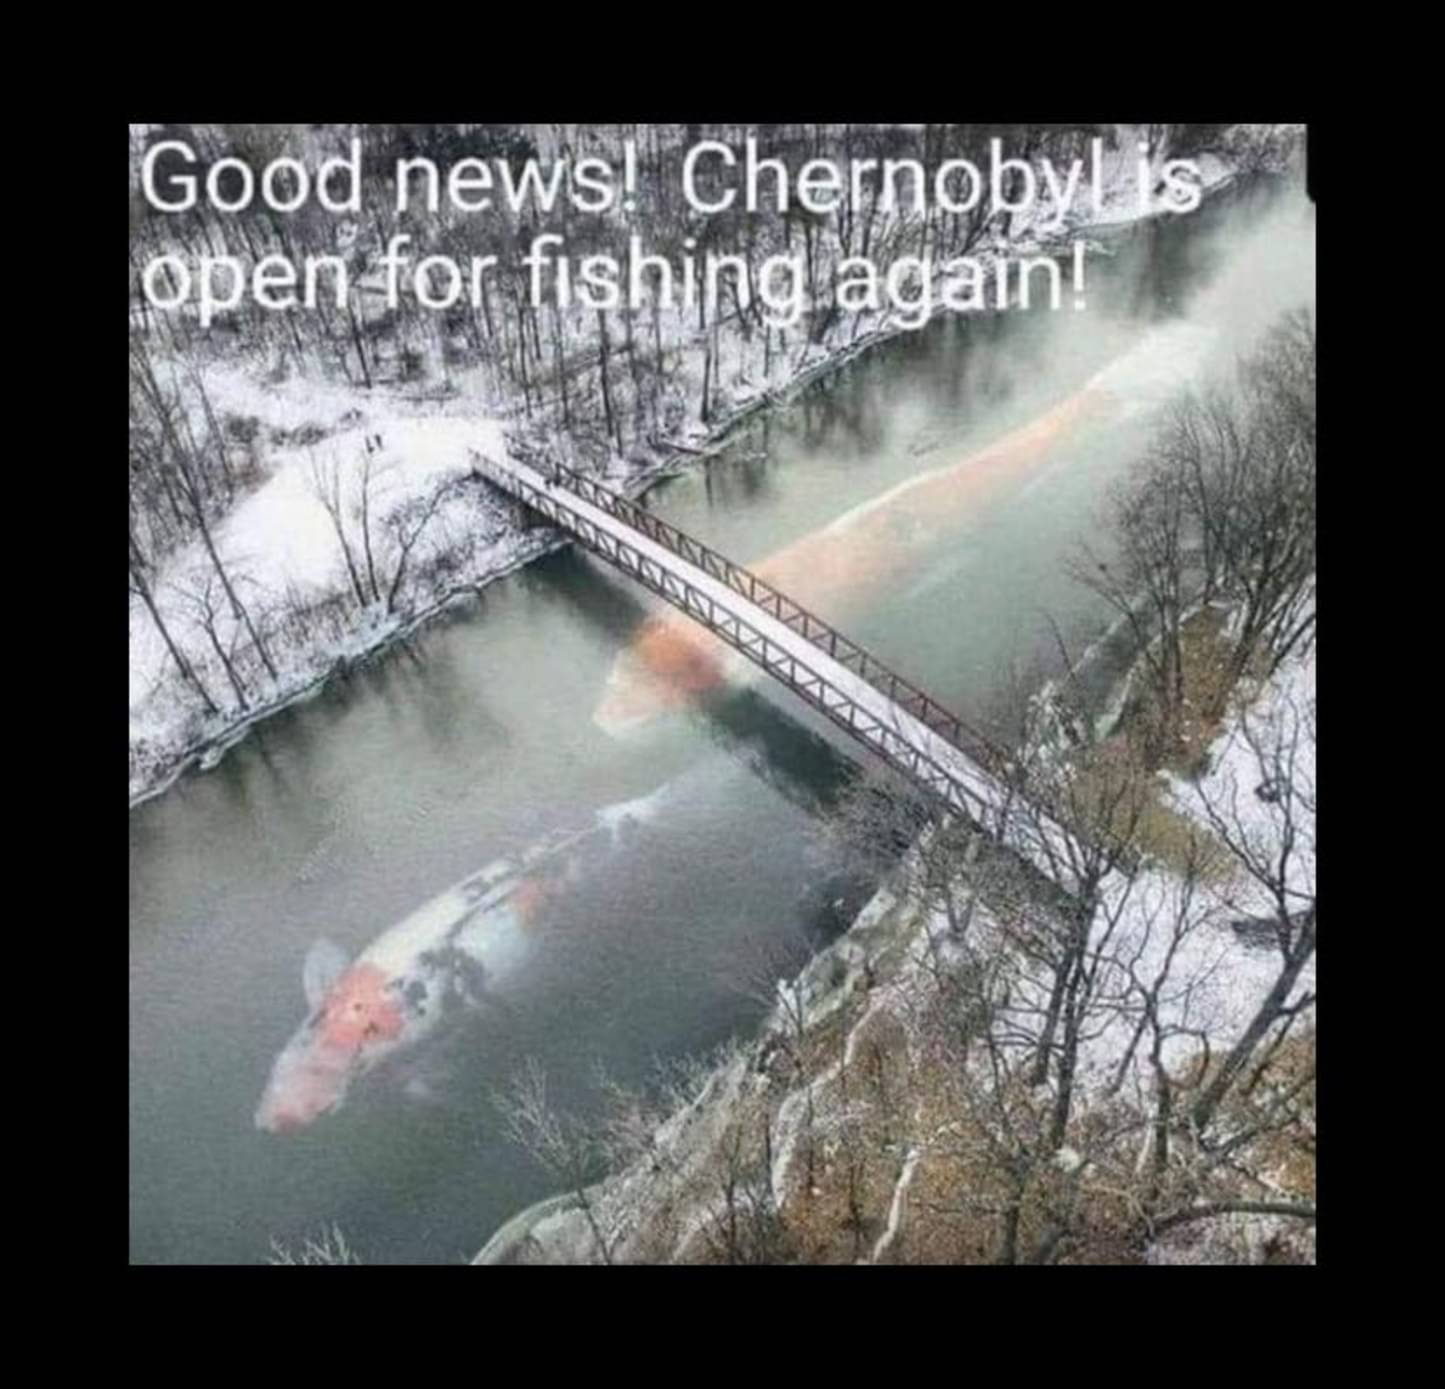 chernobyl_is_open_for_fishing_again.jpg